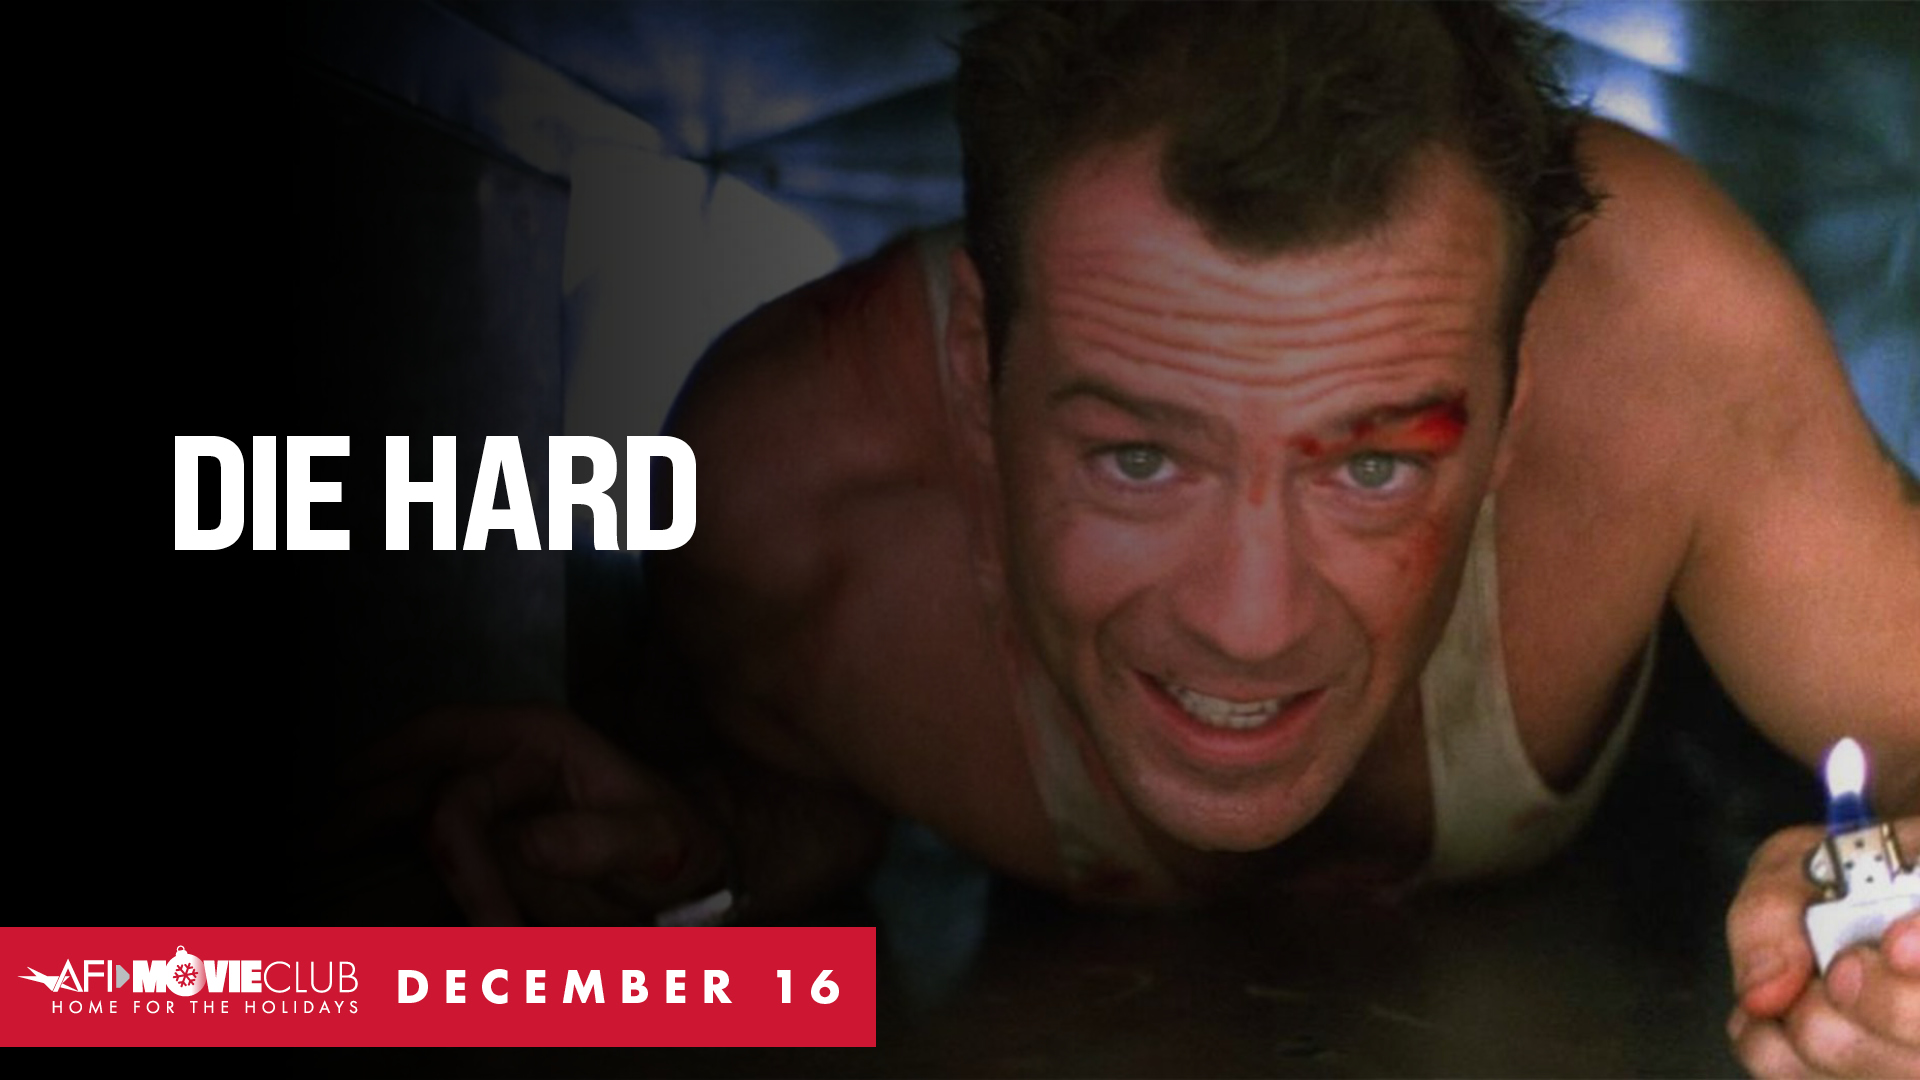 Die Hard Film Still - Bruce Willis